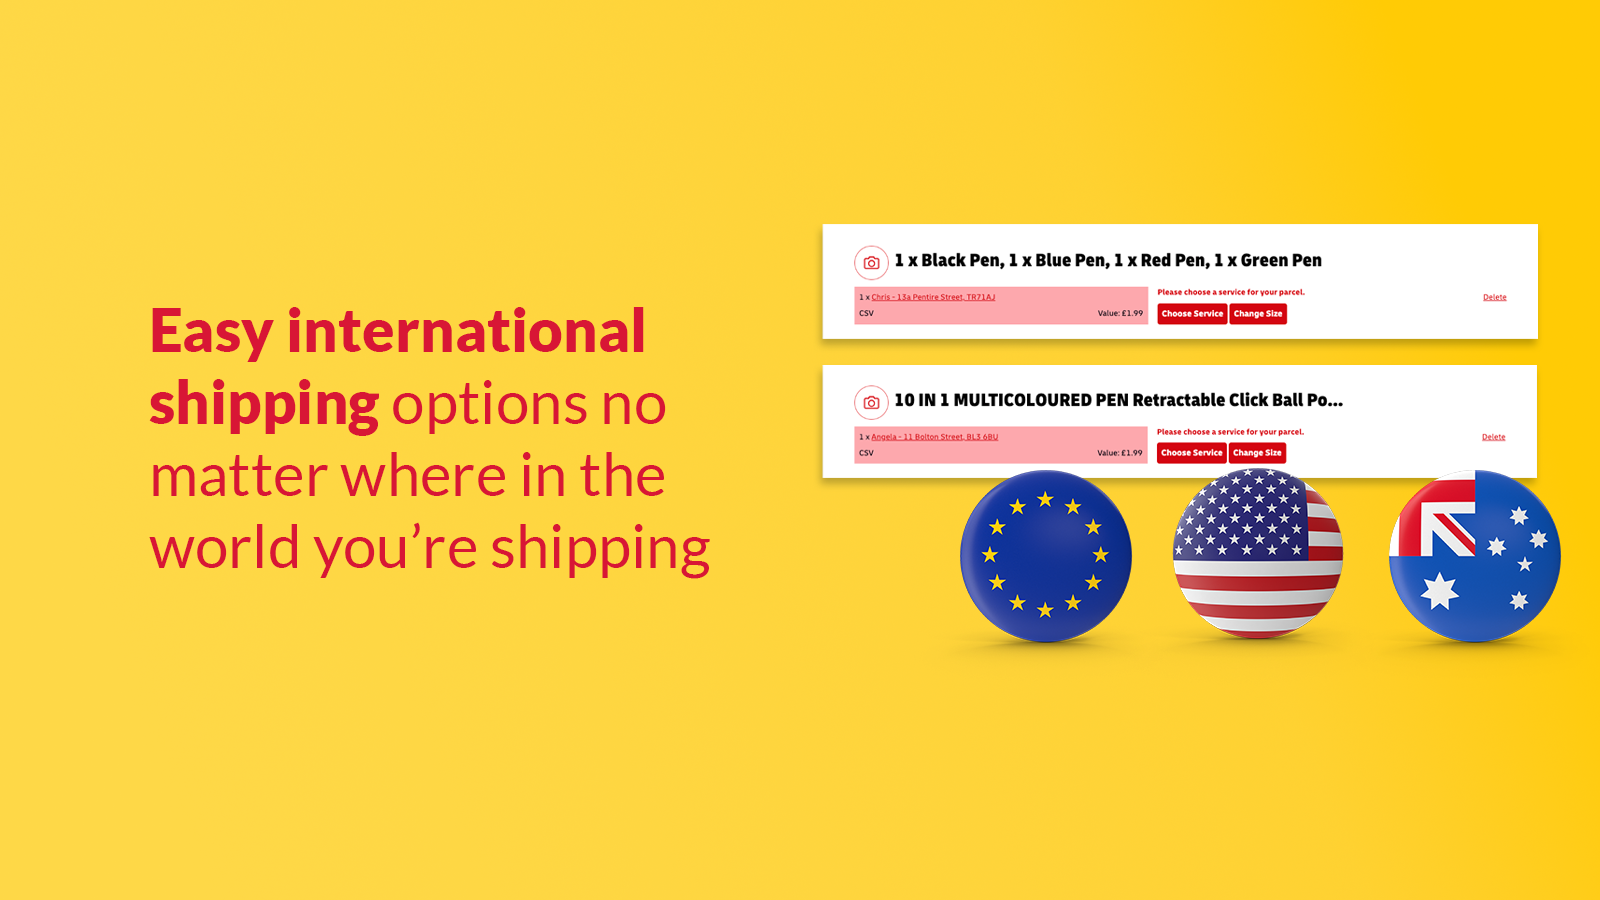 Opções fáceis de envio internacional, não importa onde.